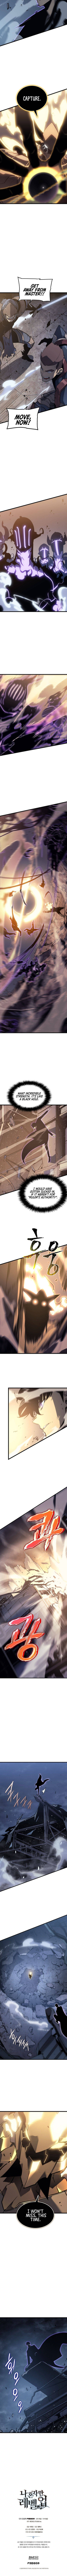 Solo Leveling Manga Manga Chapter - 147 - image 6